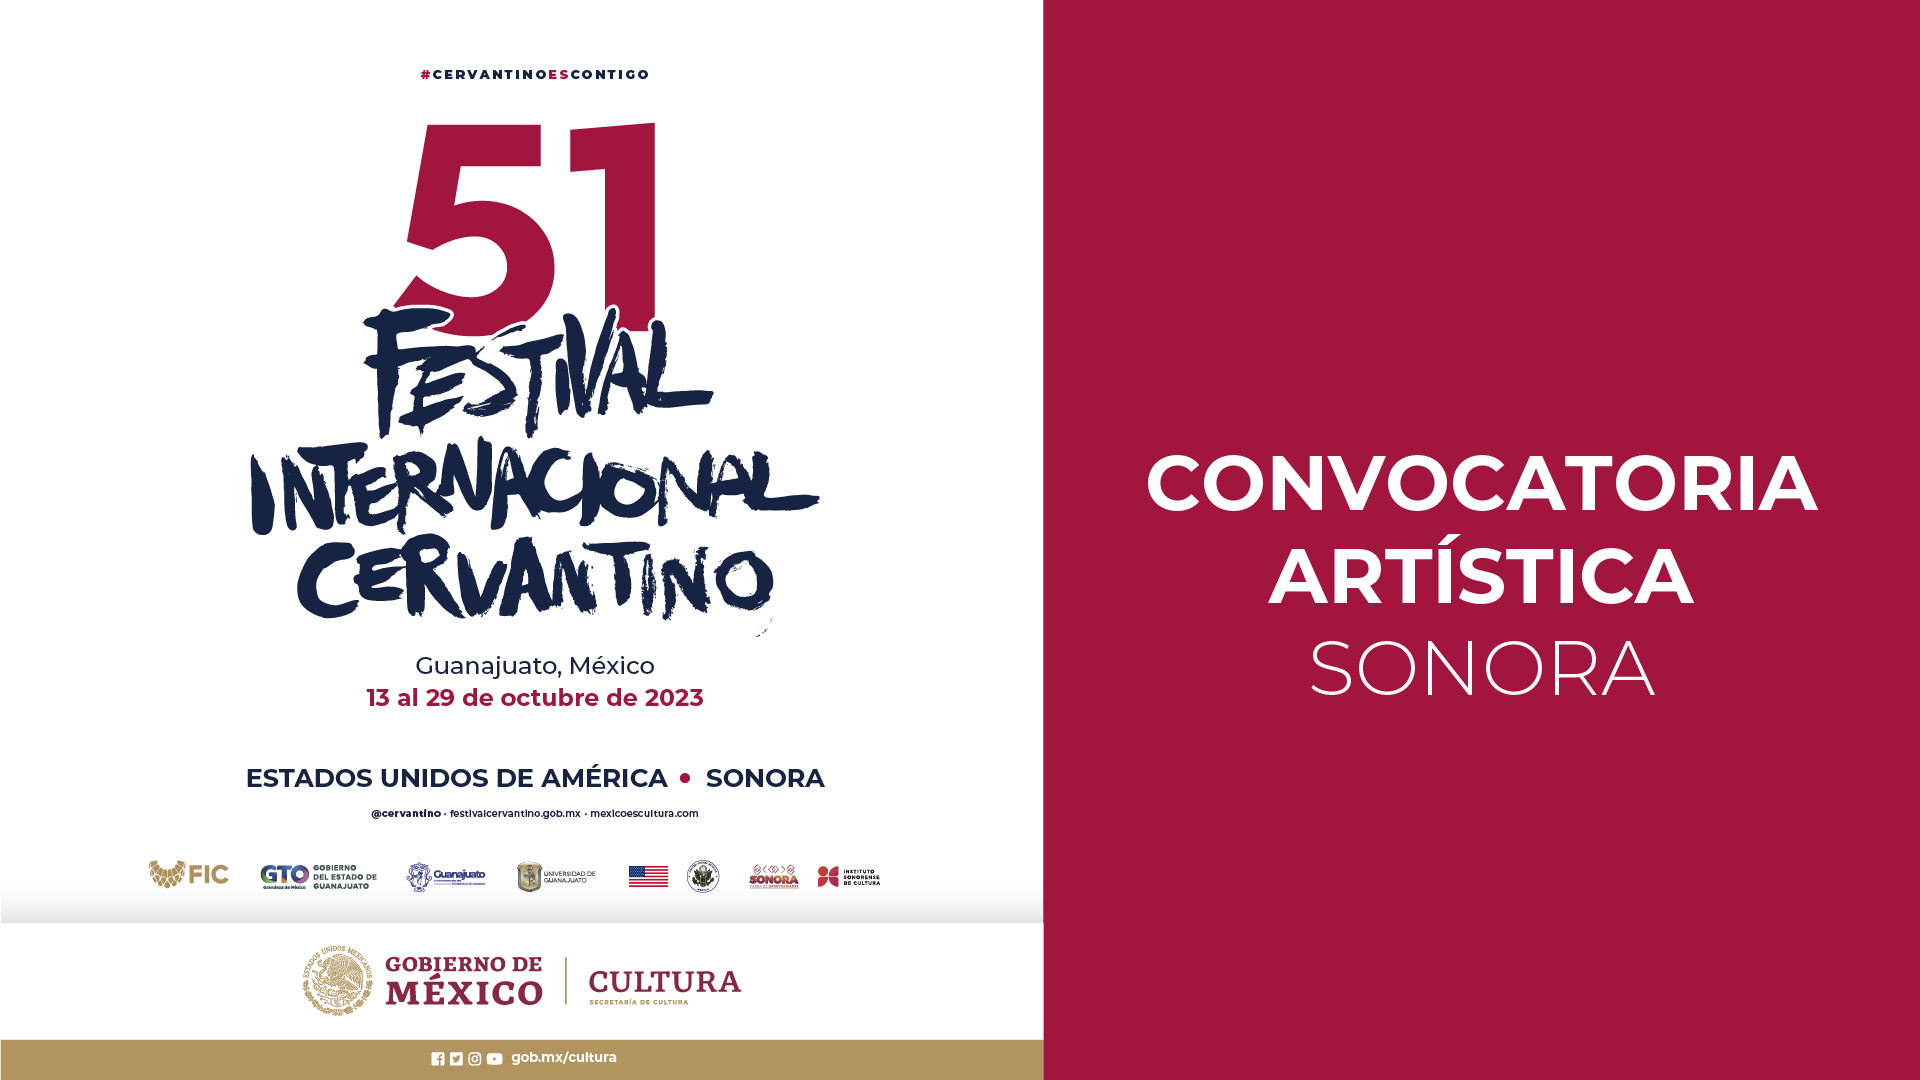 Convocatoria para participar en la 51 edición del Festival Internacional Cervantino